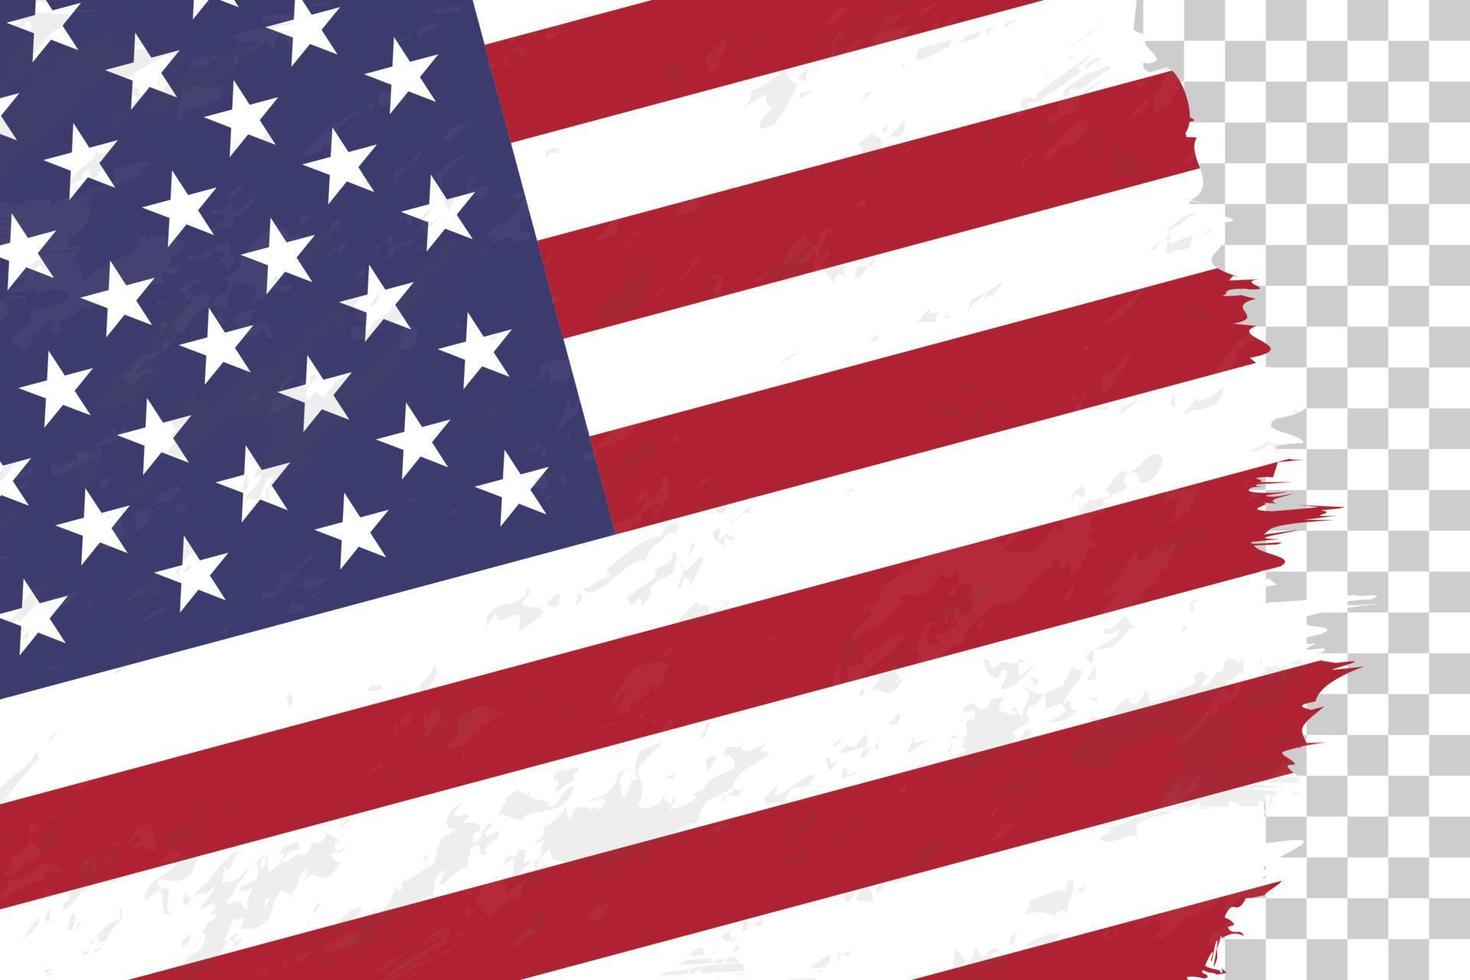 grunge abstrait horizontal brossé drapeau des états-unis sur une grille transparente. vecteur